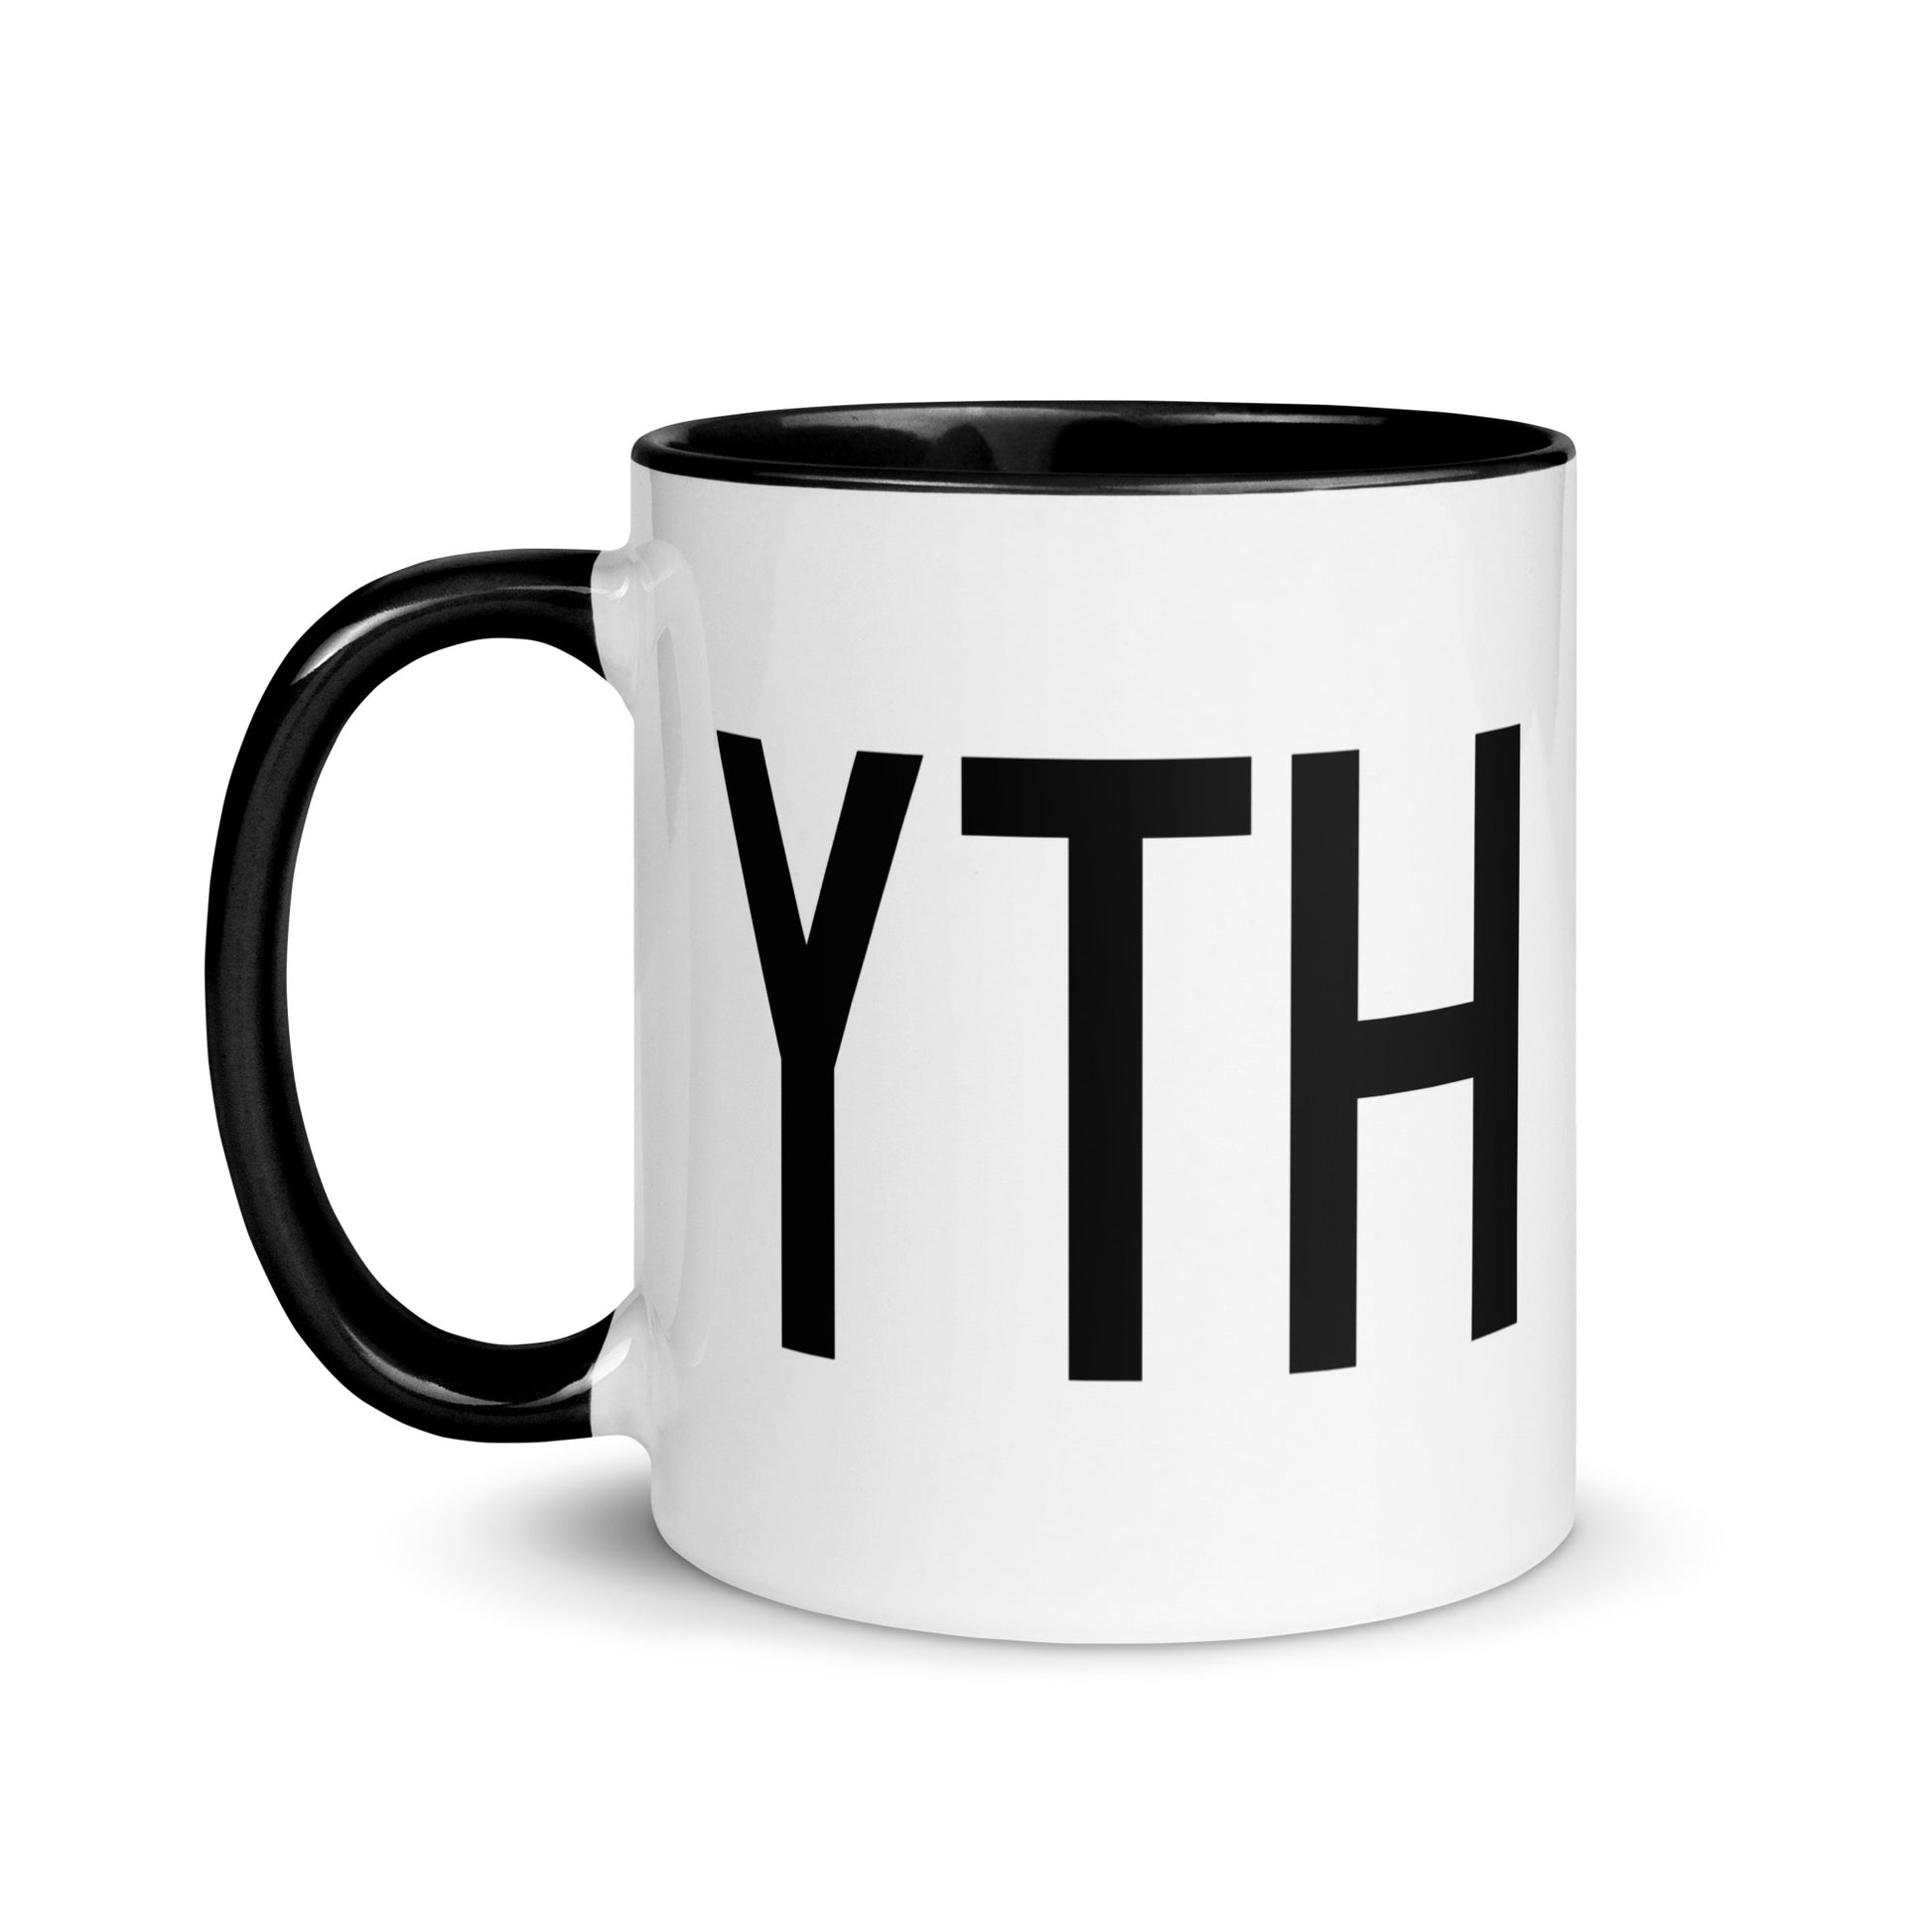 Aviation-Theme Coffee Mug - Black • YTH Thompson • YHM Designs - Image 03